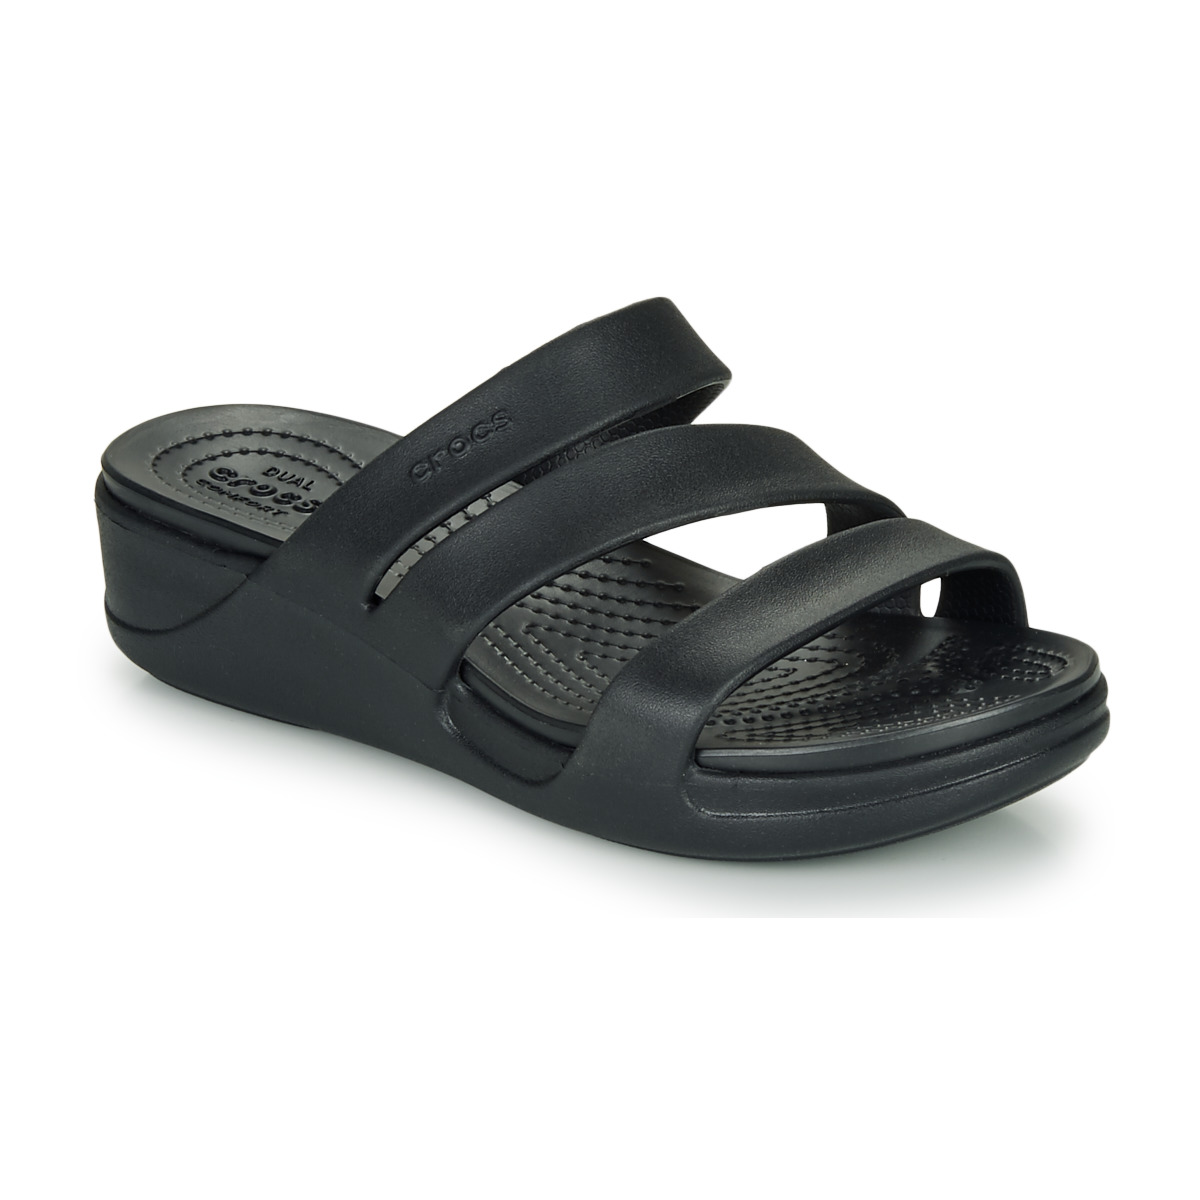 crocs mule sandals